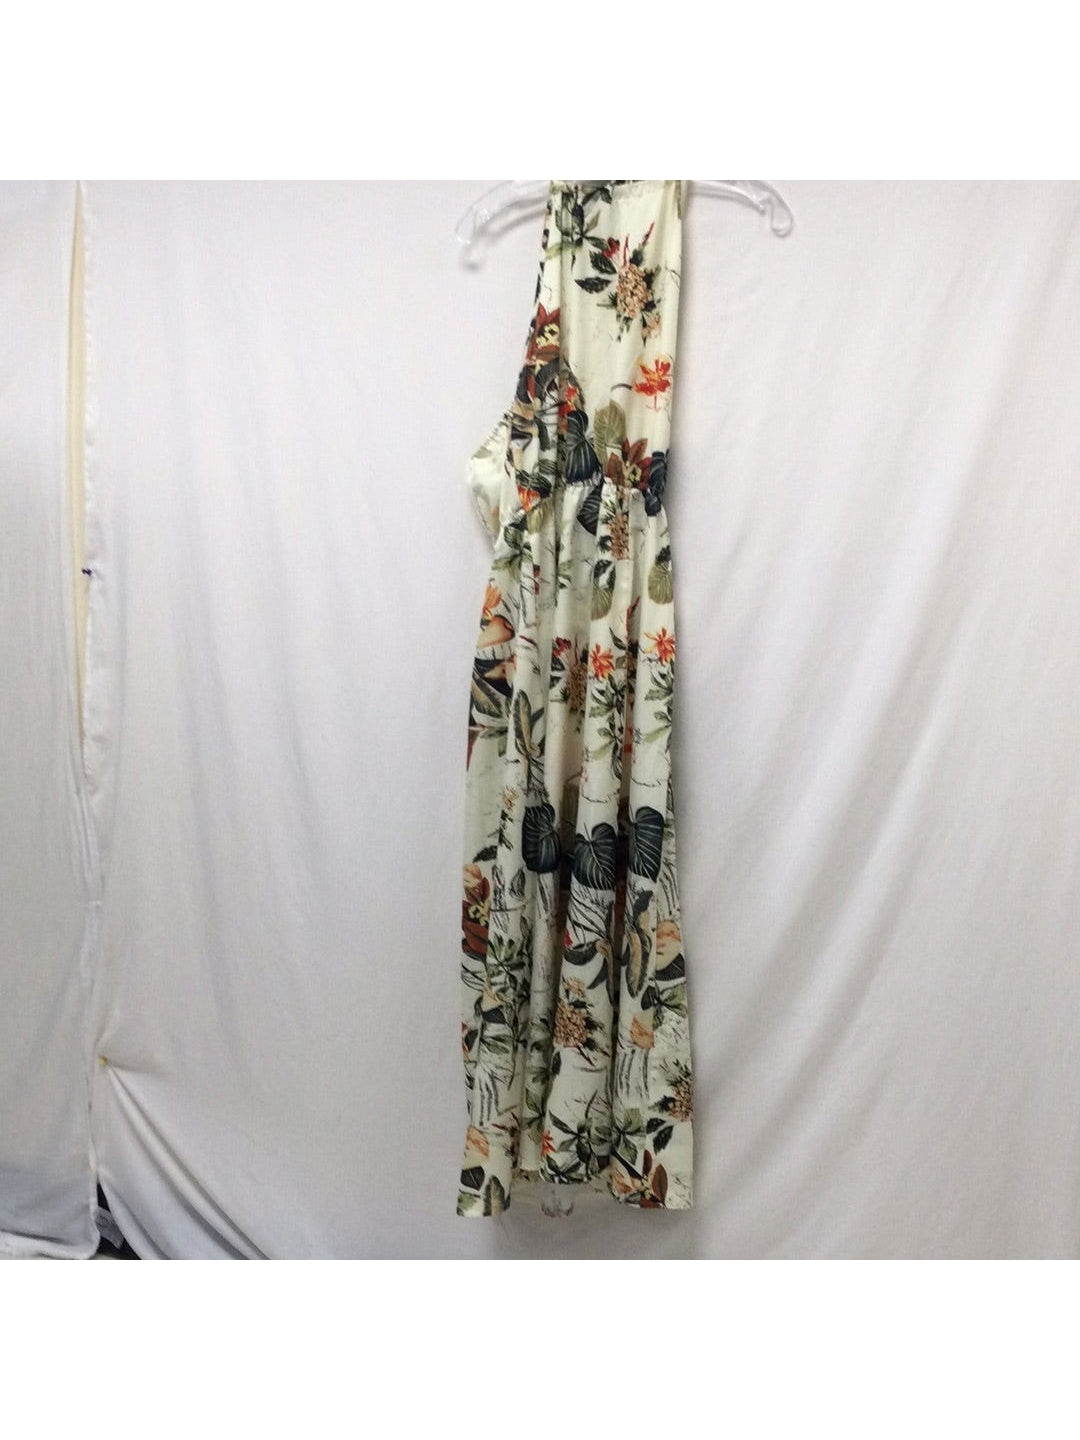 Shein Ladies White Medium Flower No Sleeve Dress - The Kennedy Collective Thrift - 